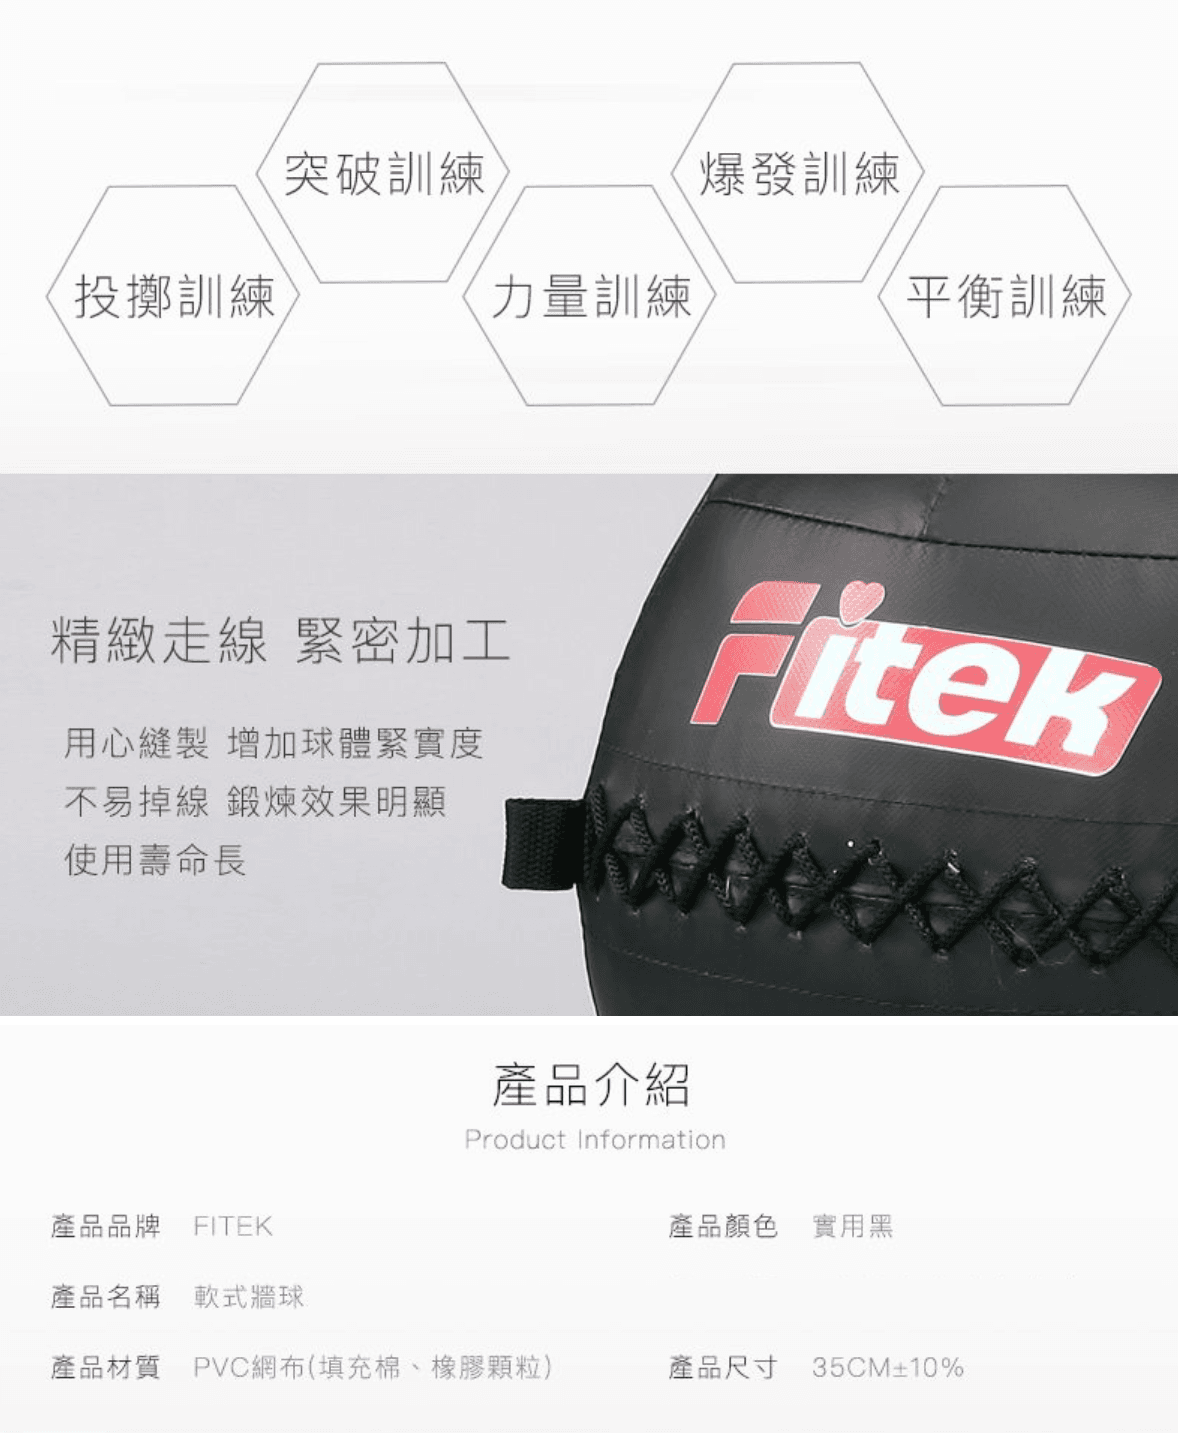 軟式藥球牆球5KG【Fitek】 4